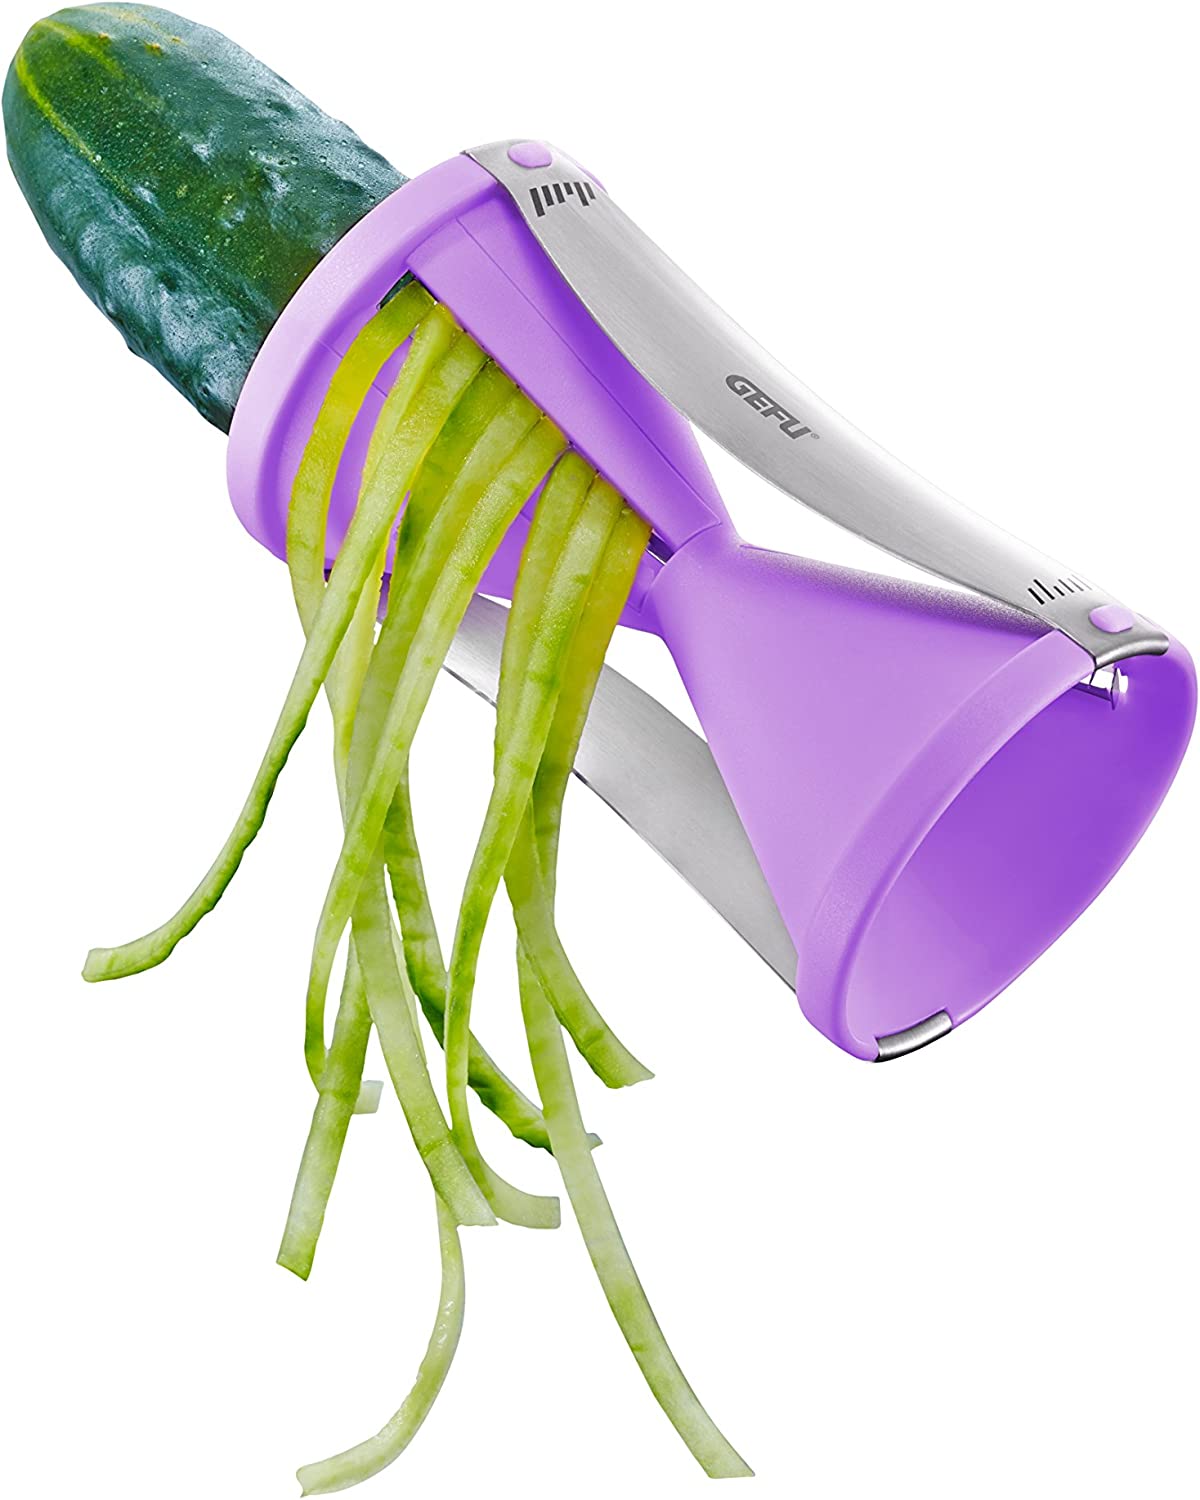 Gefu Spirelli Spiral Cutter Vegetable Slicer with Remnant Holder, Stainless Steel/Plastic, Purple, 89264